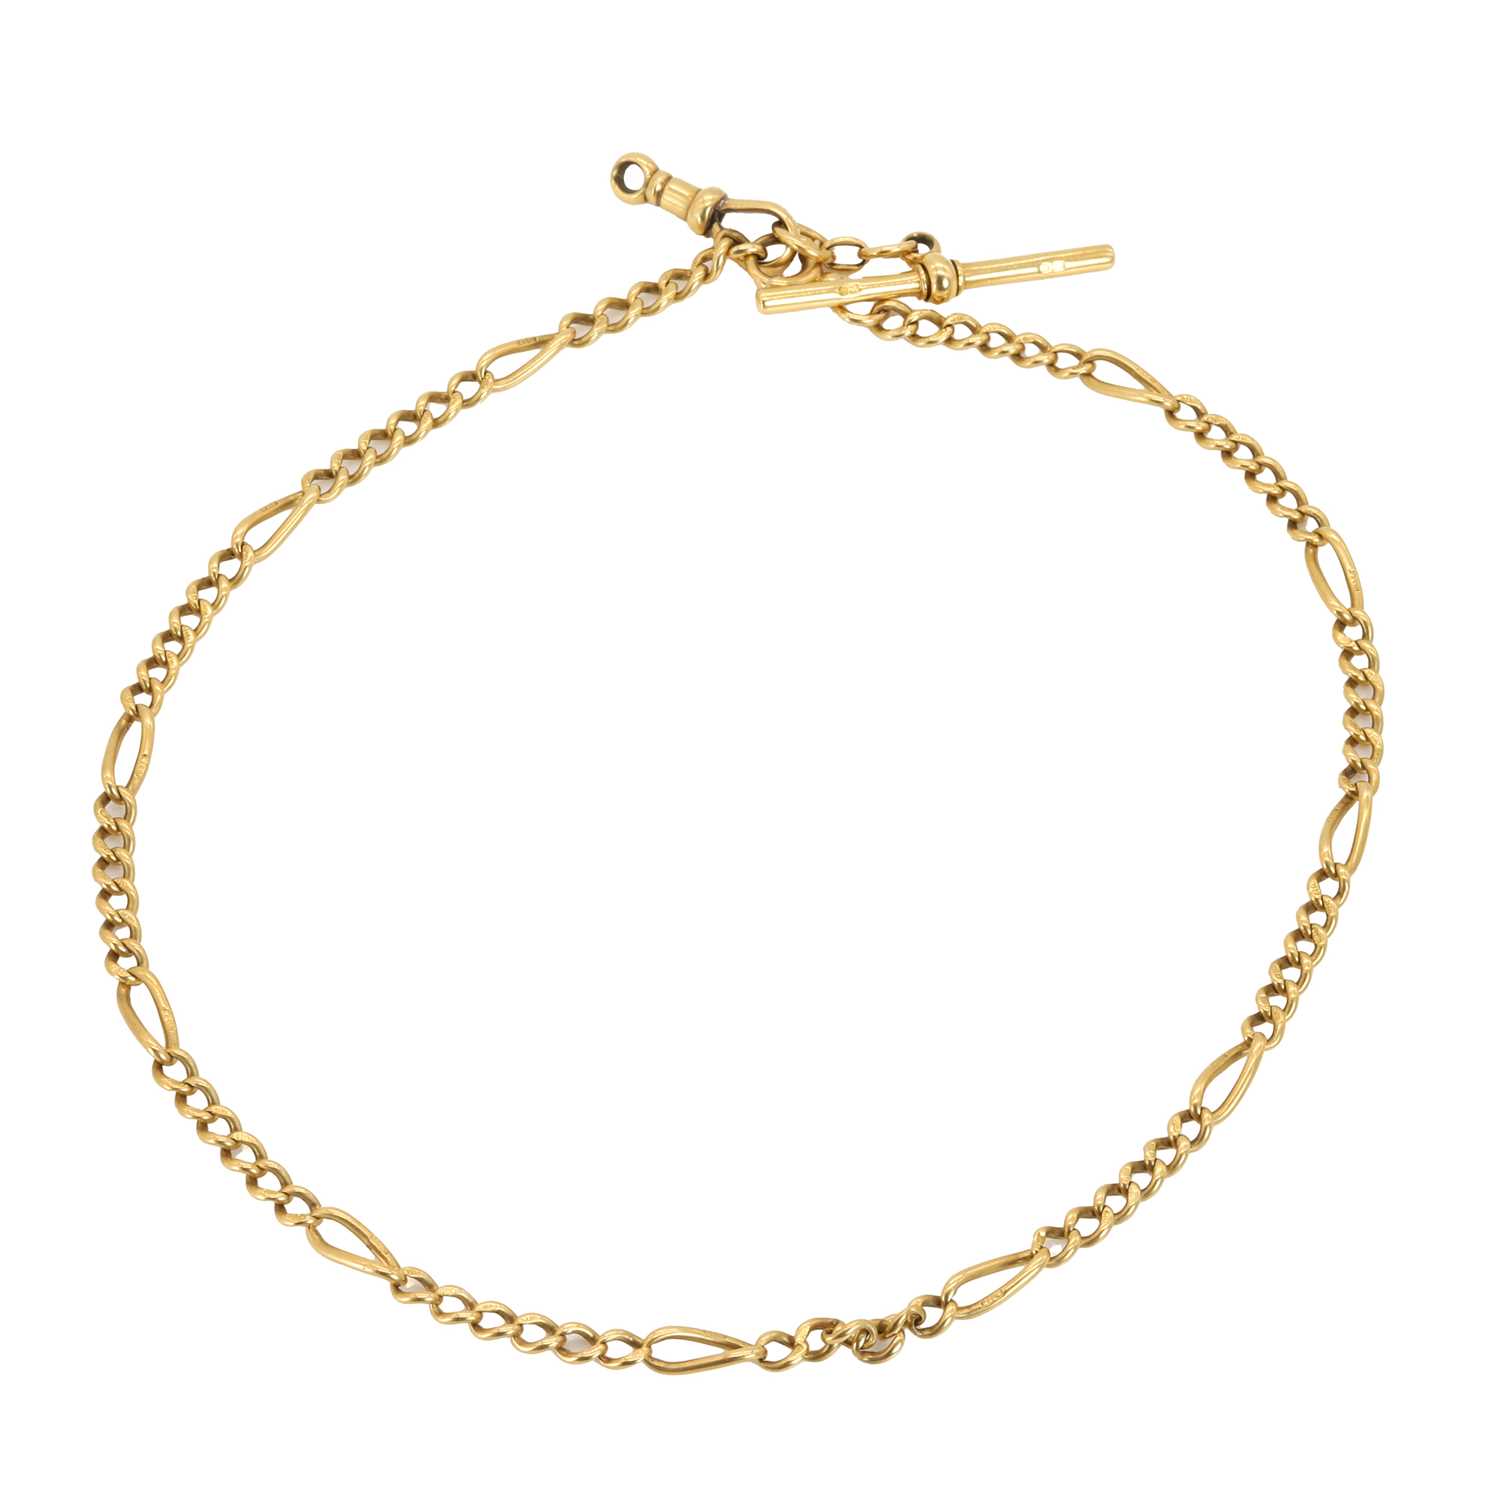 An 18ct gold Albert chain,